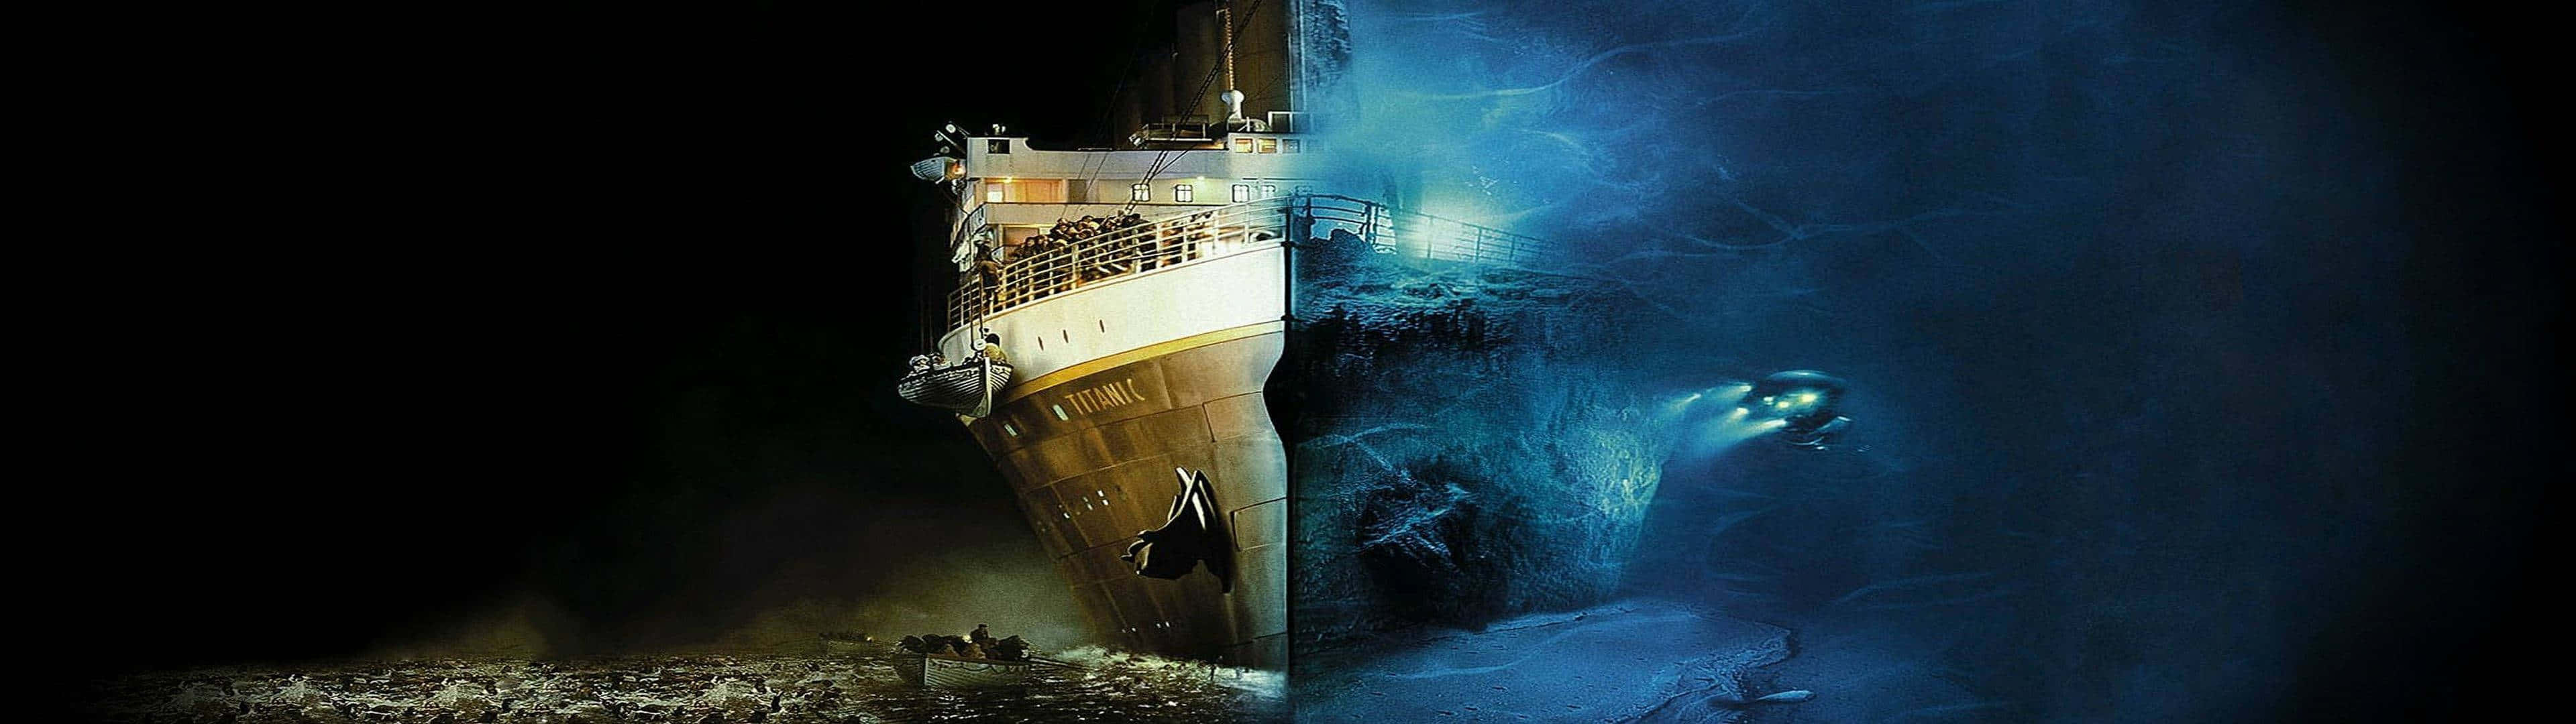 Titanicfilmaffisch - Hd-bakgrundsbilder.